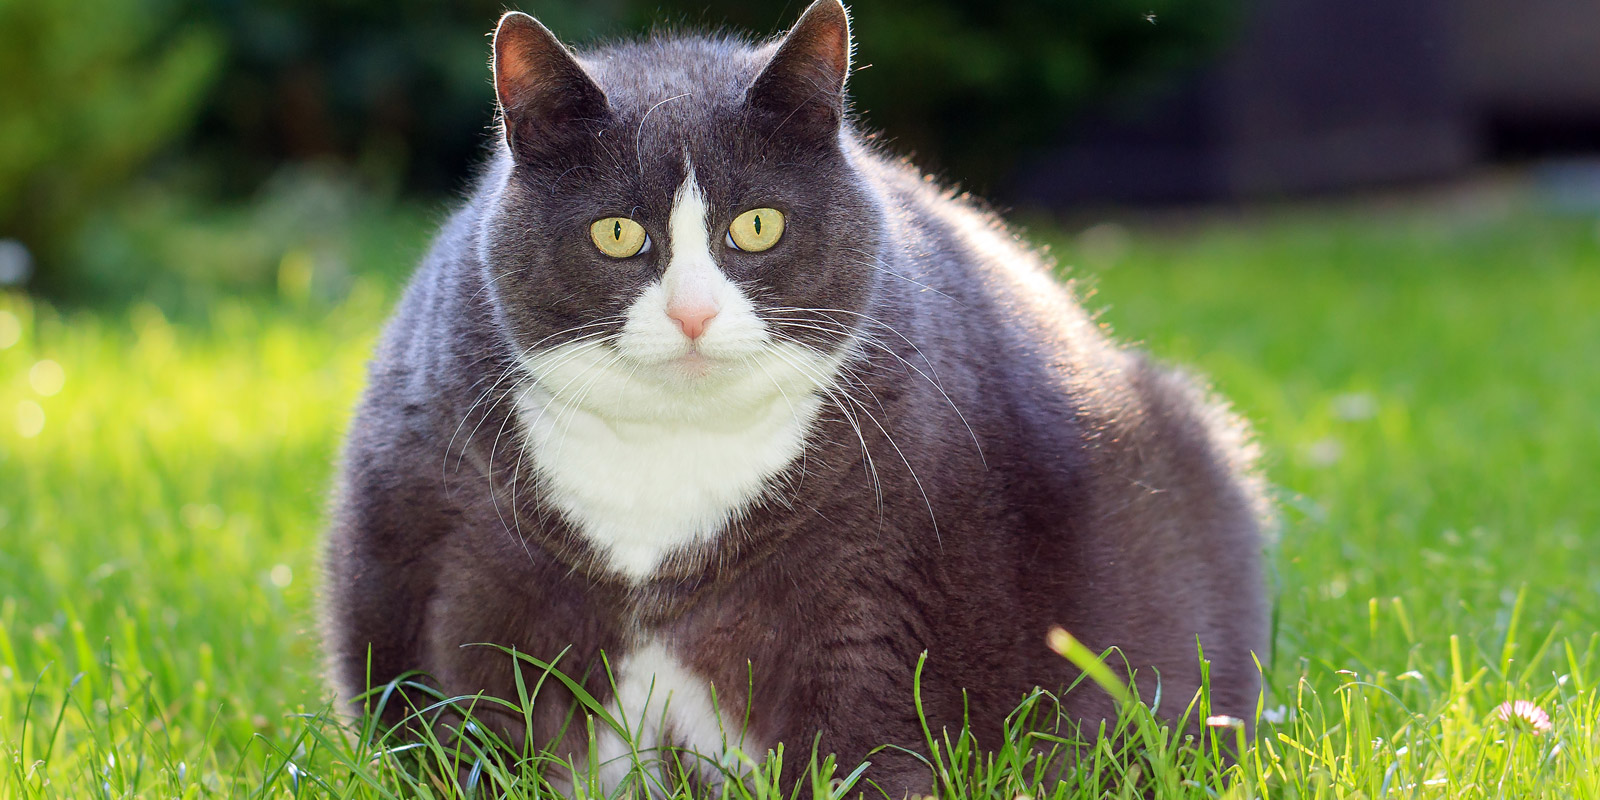 gato obeso negro con blanco sentado en el pasto